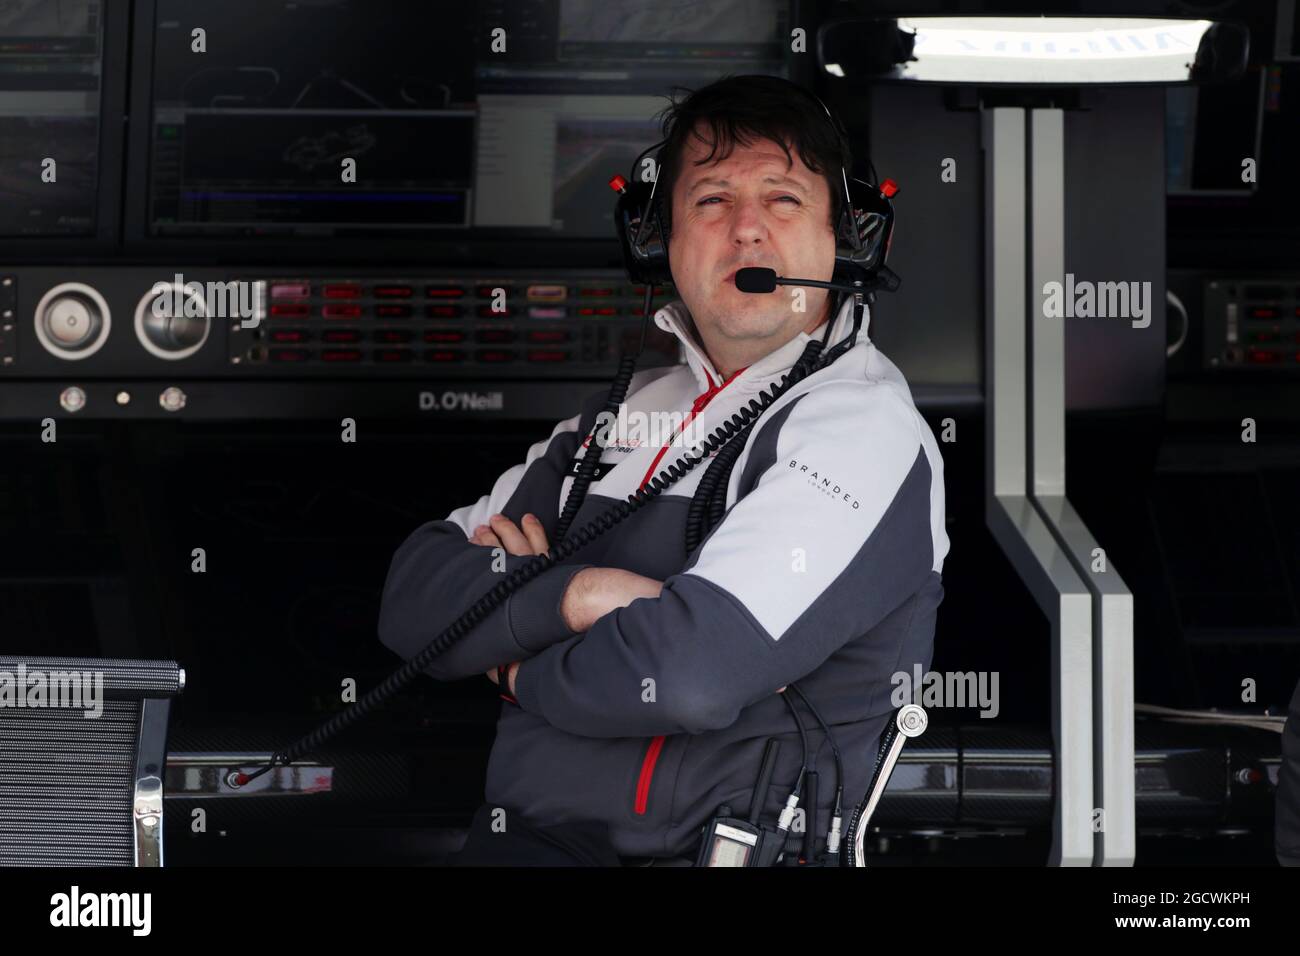 Dave O'Neill (GBR) Haas F1 Gerente del equipo. Prueba de Fórmula Uno, día 3, jueves 3rd de marzo de 2016. Barcelona, España. Foto de stock